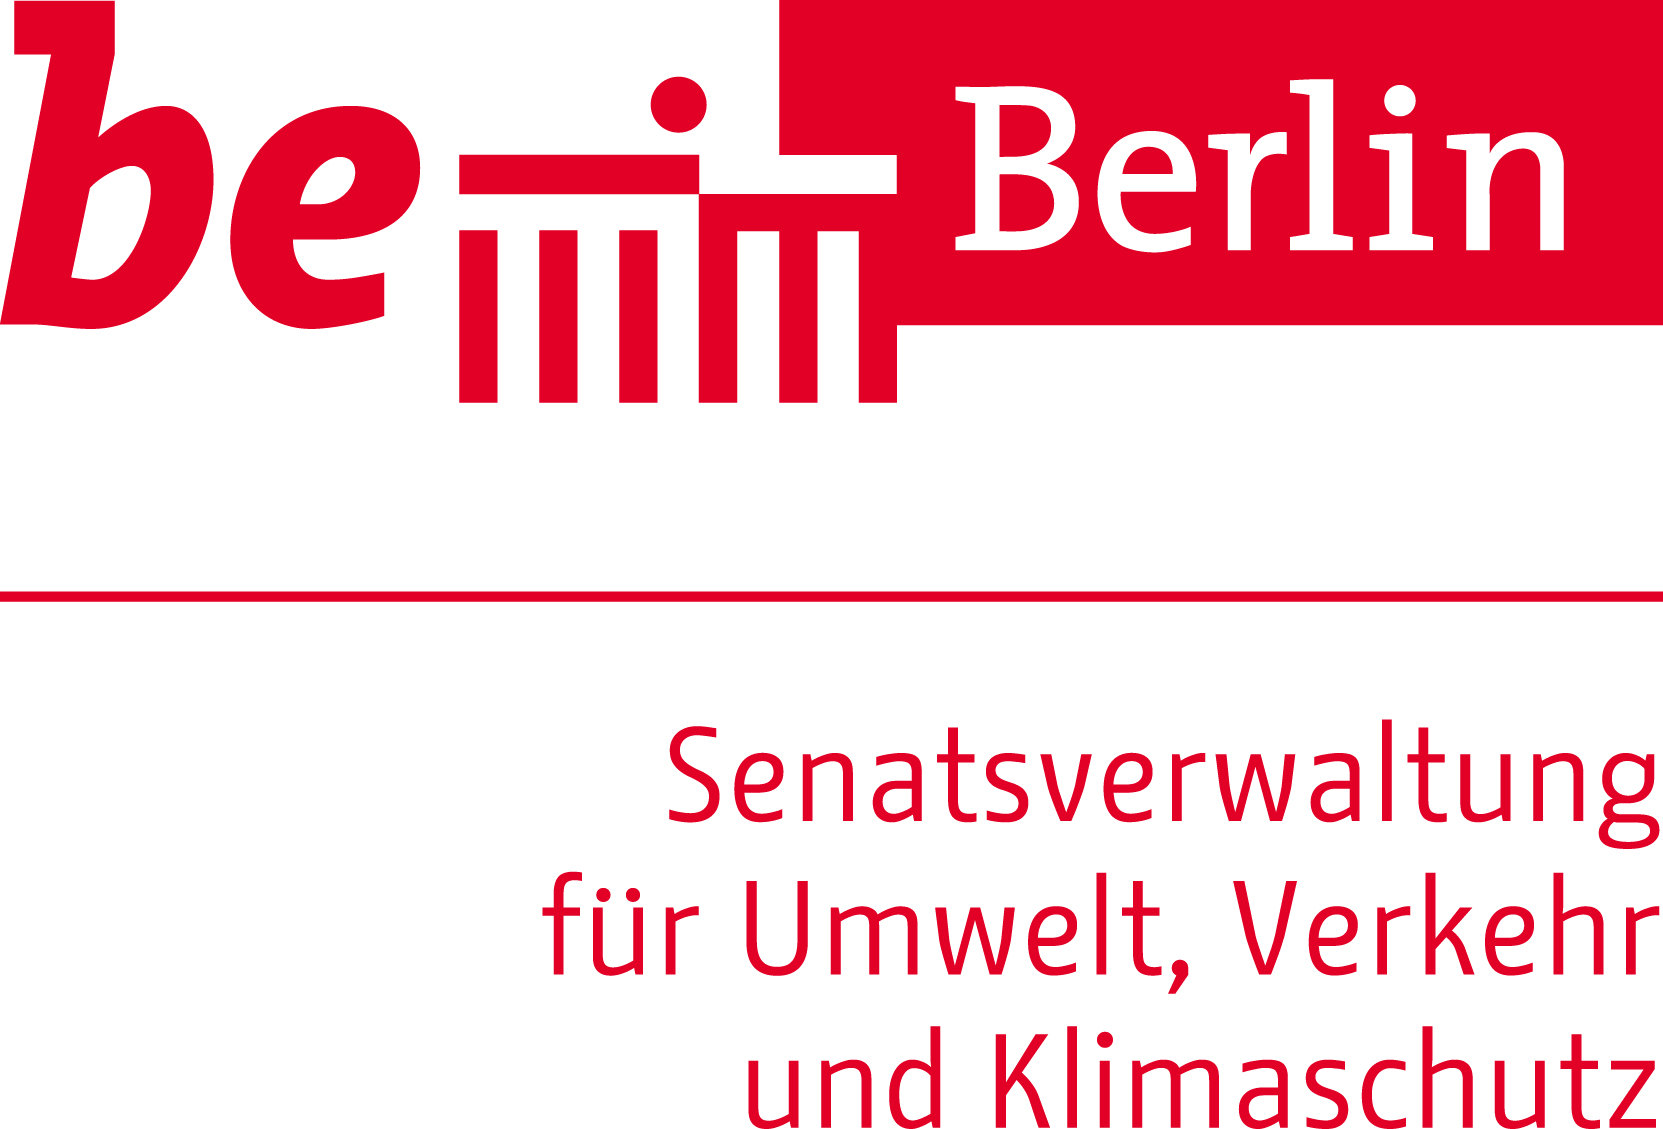 Senatsverwaltung für Umwelt, Verkehr und Klimaschutz Berlin